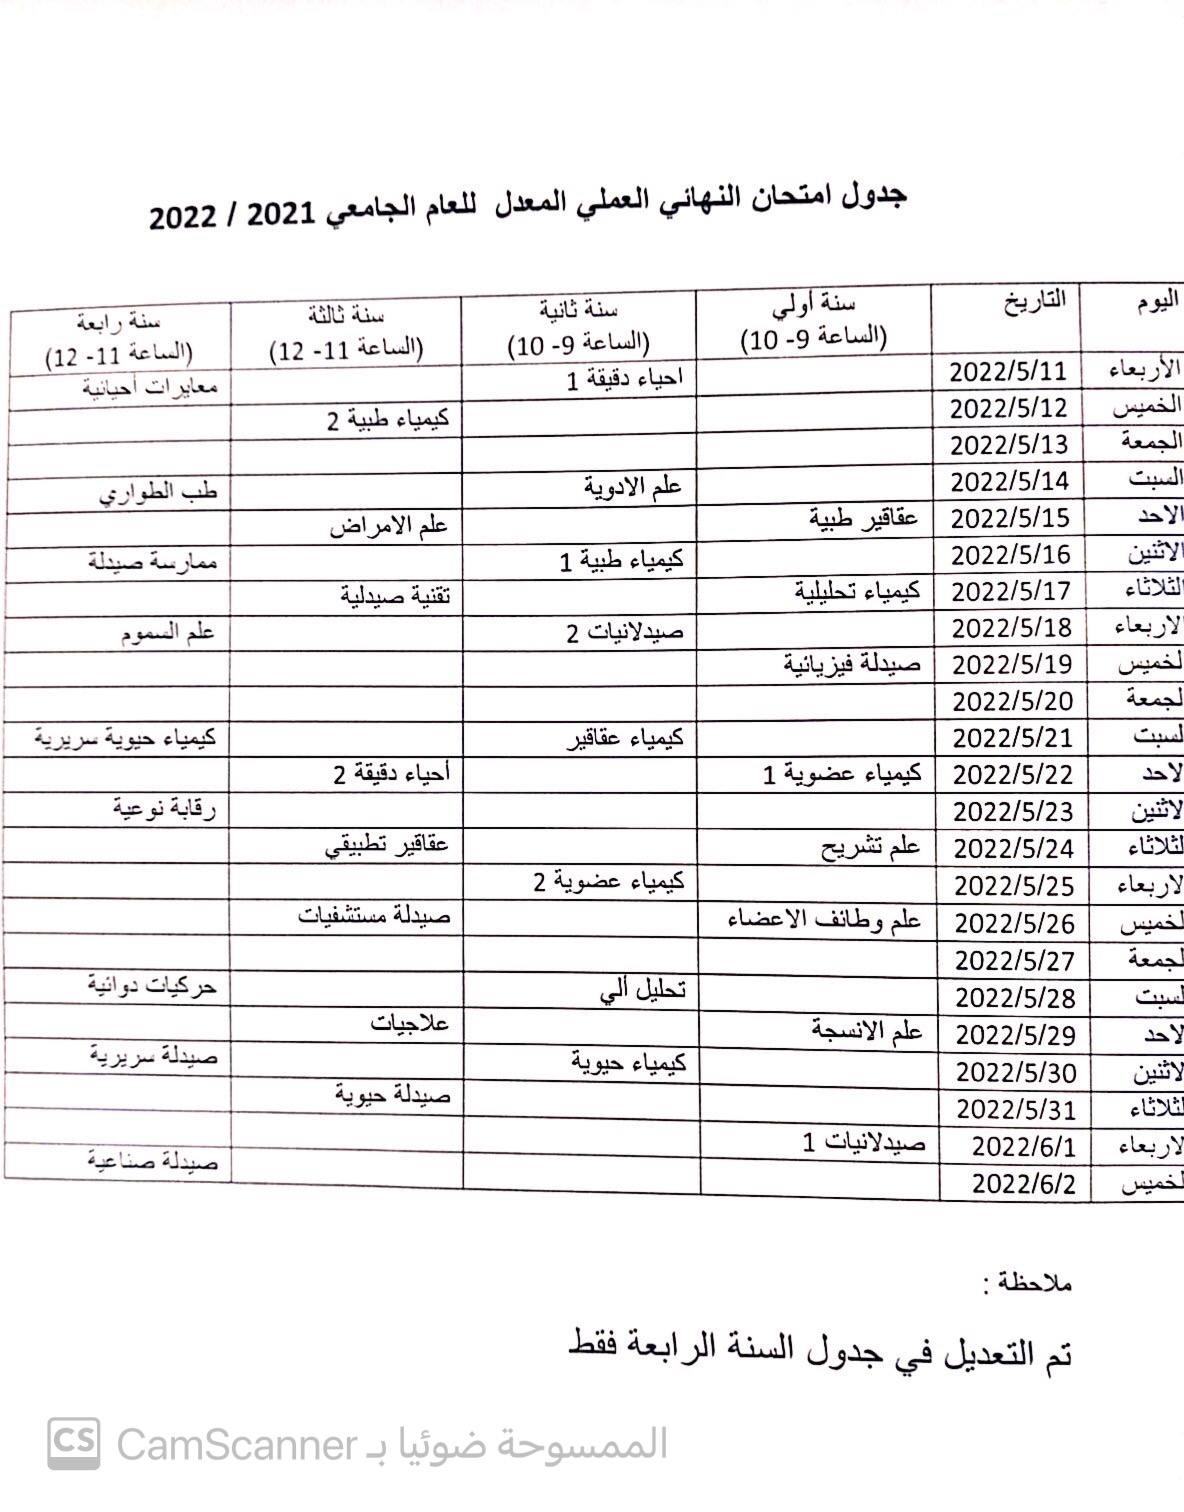 جدول امتحان النهائي عملي المعدل للعام الجامعي 2022/2021